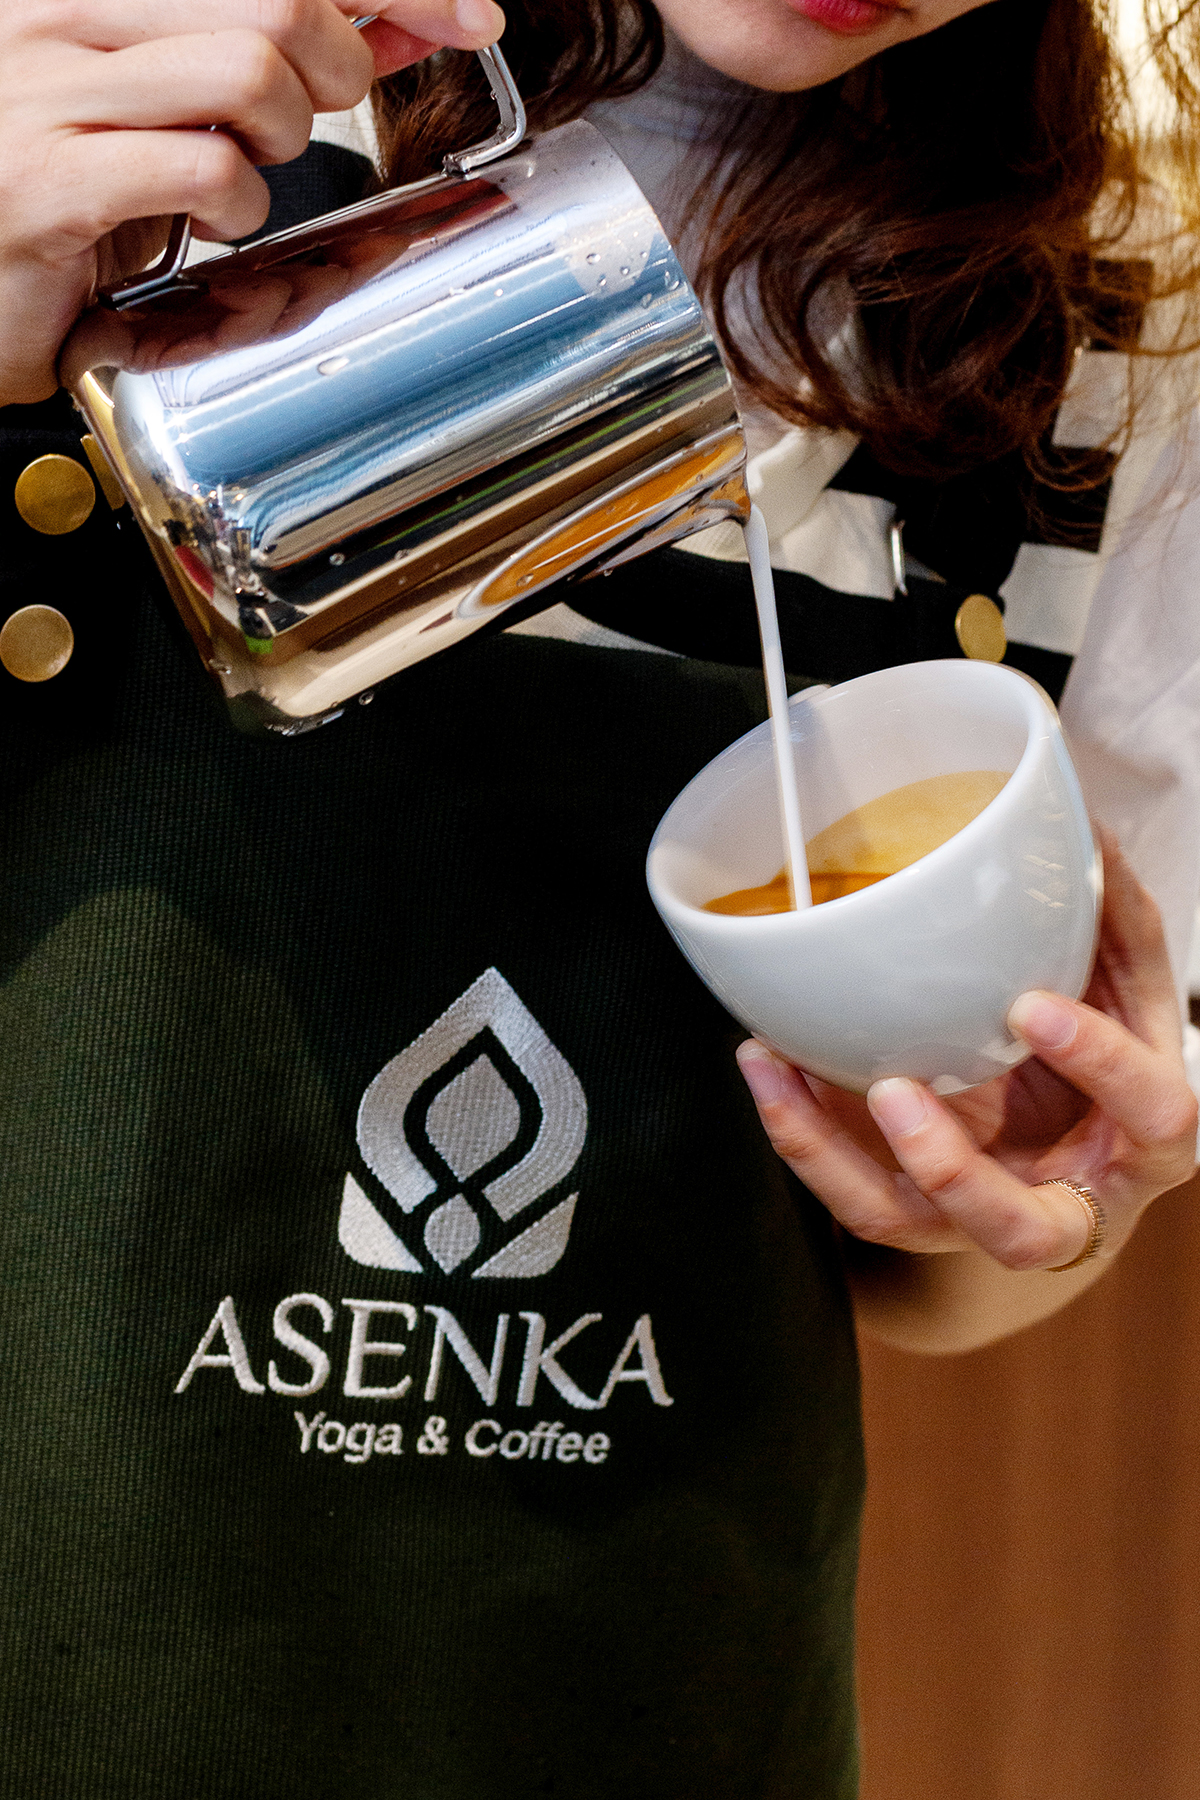 "Cà phê là thức uống quen thuộc mỗi buổi sáng, giúp tôi có thể cảm nhận được cả thế giới chuyển động trong cơ thể." Tại ASENKA, cà phê còn là một cách thưởng thức của những người bận rộn có gu. Đó là những tách cà phê cà phê đặc sản, được tuyển chọn kĩ lưỡng, đem đến nhiều trải nghiệm mới lạ. 